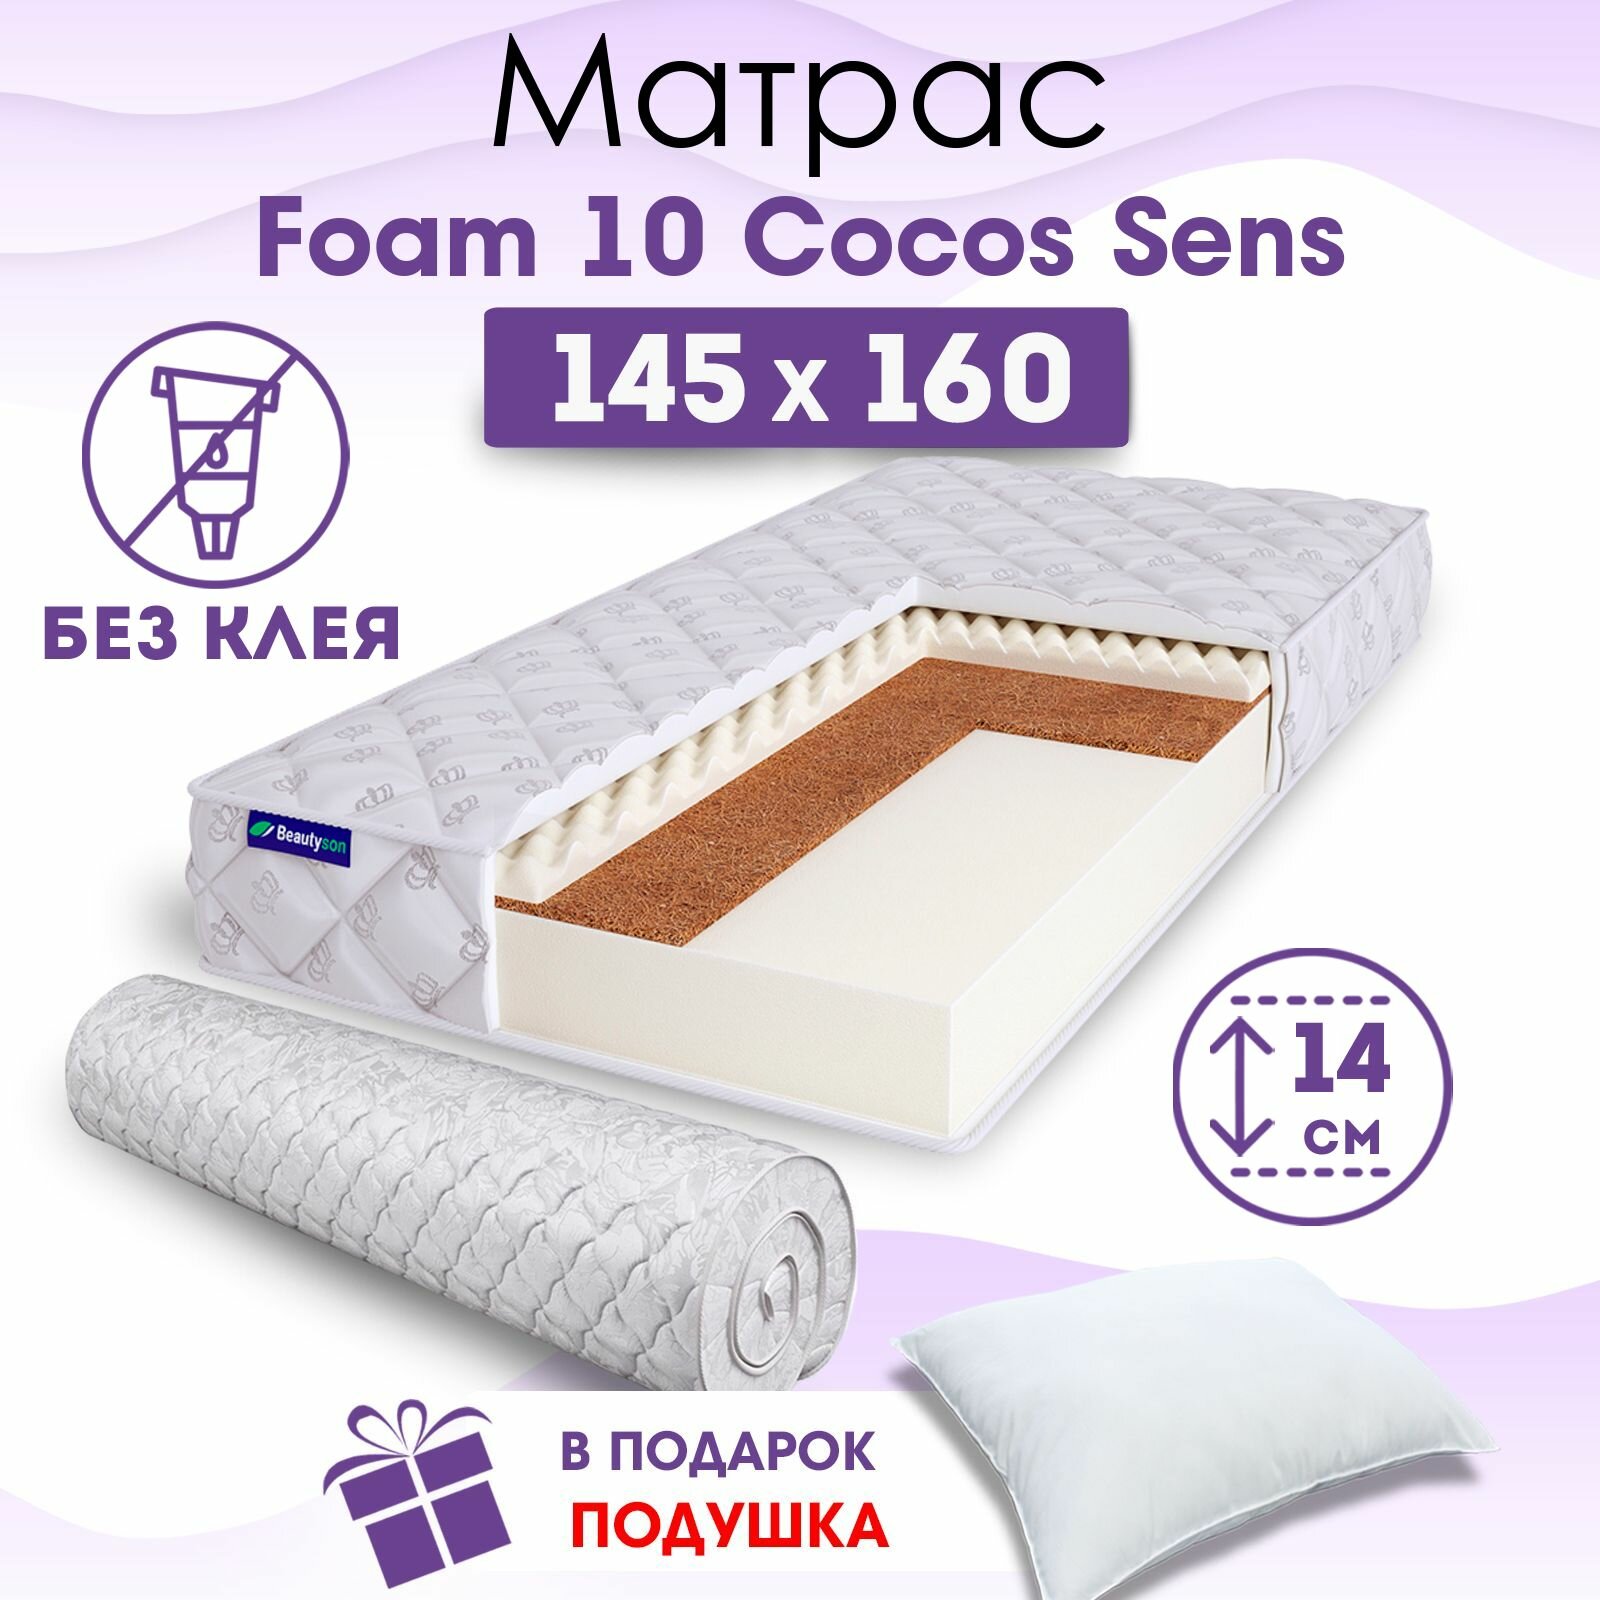 Ортопедический матрас Beautyson Foam 10 Cocos Sens без клея, 145х160, 14 см, беспружинный, двуспальный, на кровать, для дивана, умеренно мягкий